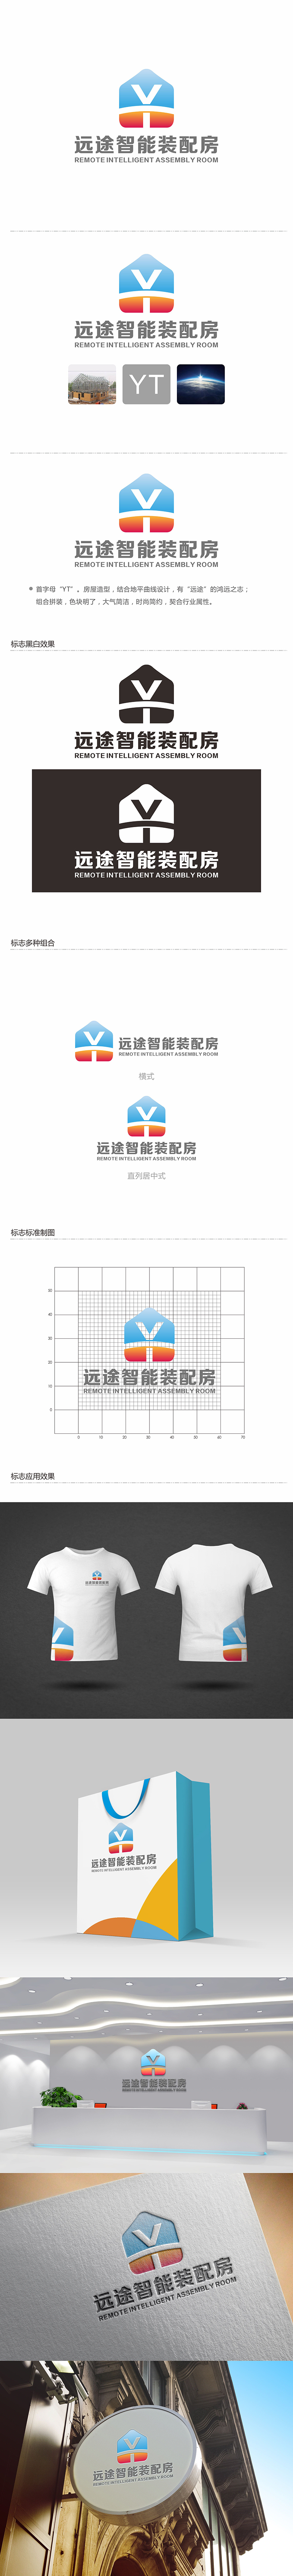 郑锦尚的江苏远途智能装配房有限公司logo设计